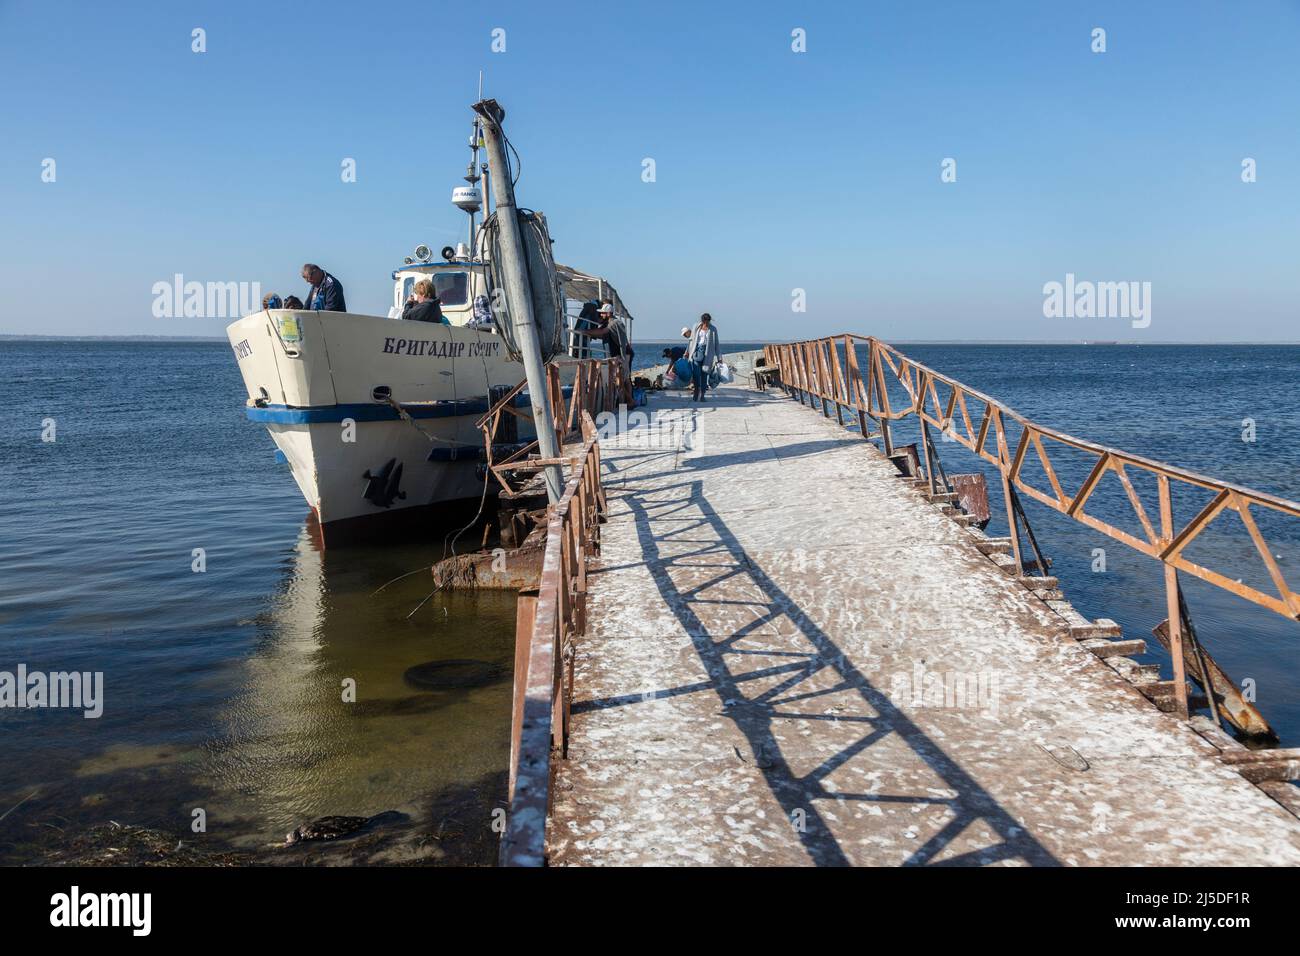 OCHAKIV, REGION MYKOLAIV, UKRAINE - 16. SEPTEMBER 2019: Die Menschen werden auf das Zivilschiff "Brigadier Gorich" in der Nähe der Seebrücke, Schwarzes Meer, geladen Stockfoto